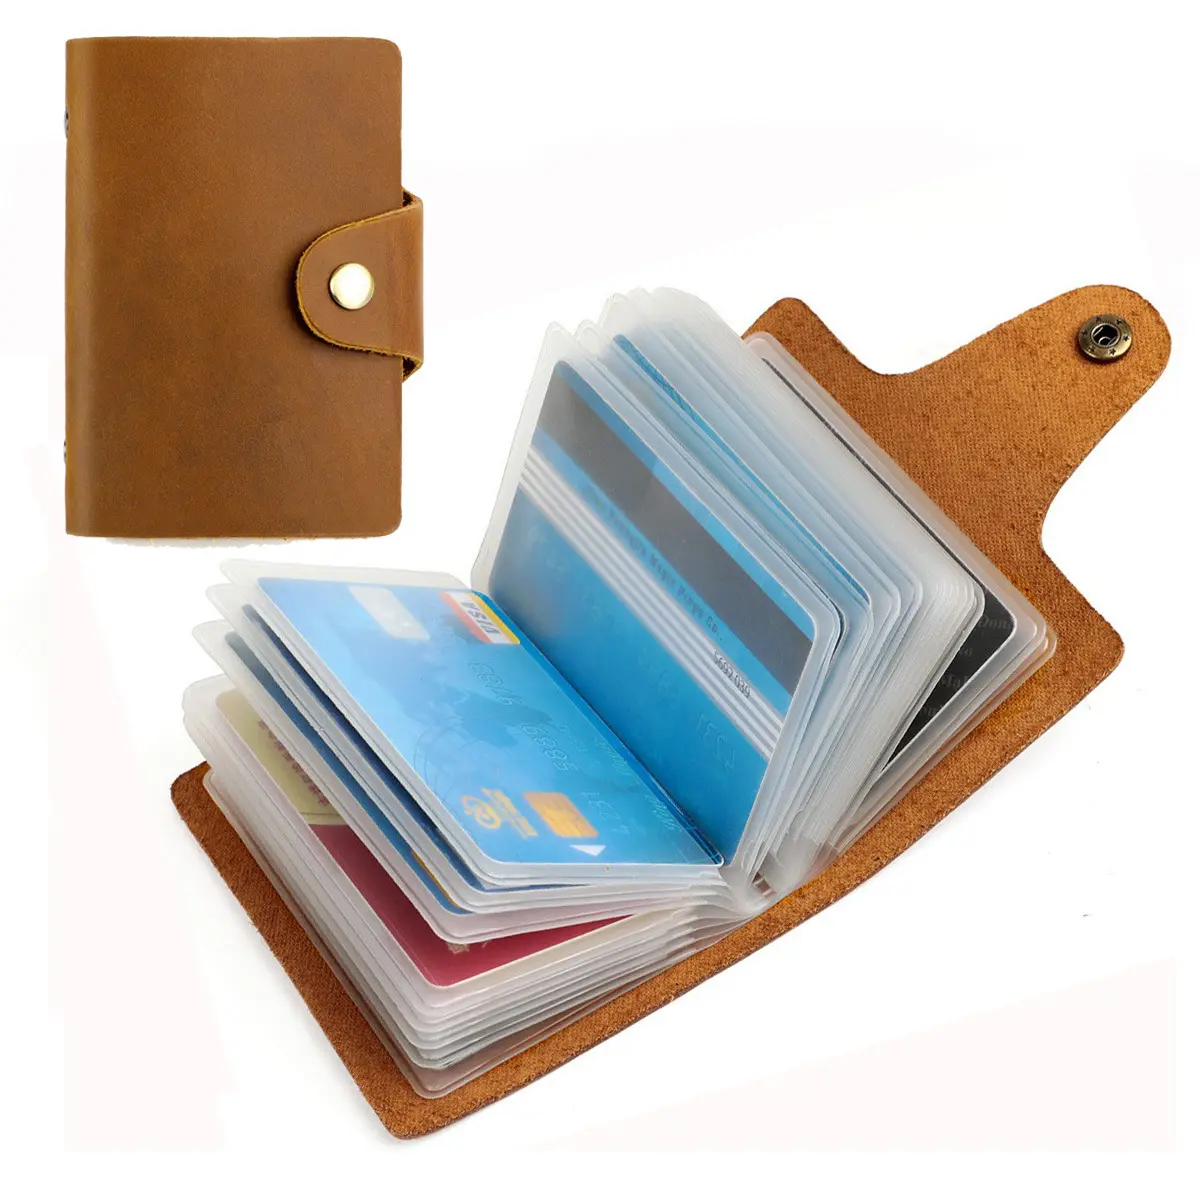 RU nueva función de cuero 24 bits tarjetero hombres y mujeres tarjeta de crédito pasaporte bolsa ID Tarjeta Pasaporte billetera 8 colores